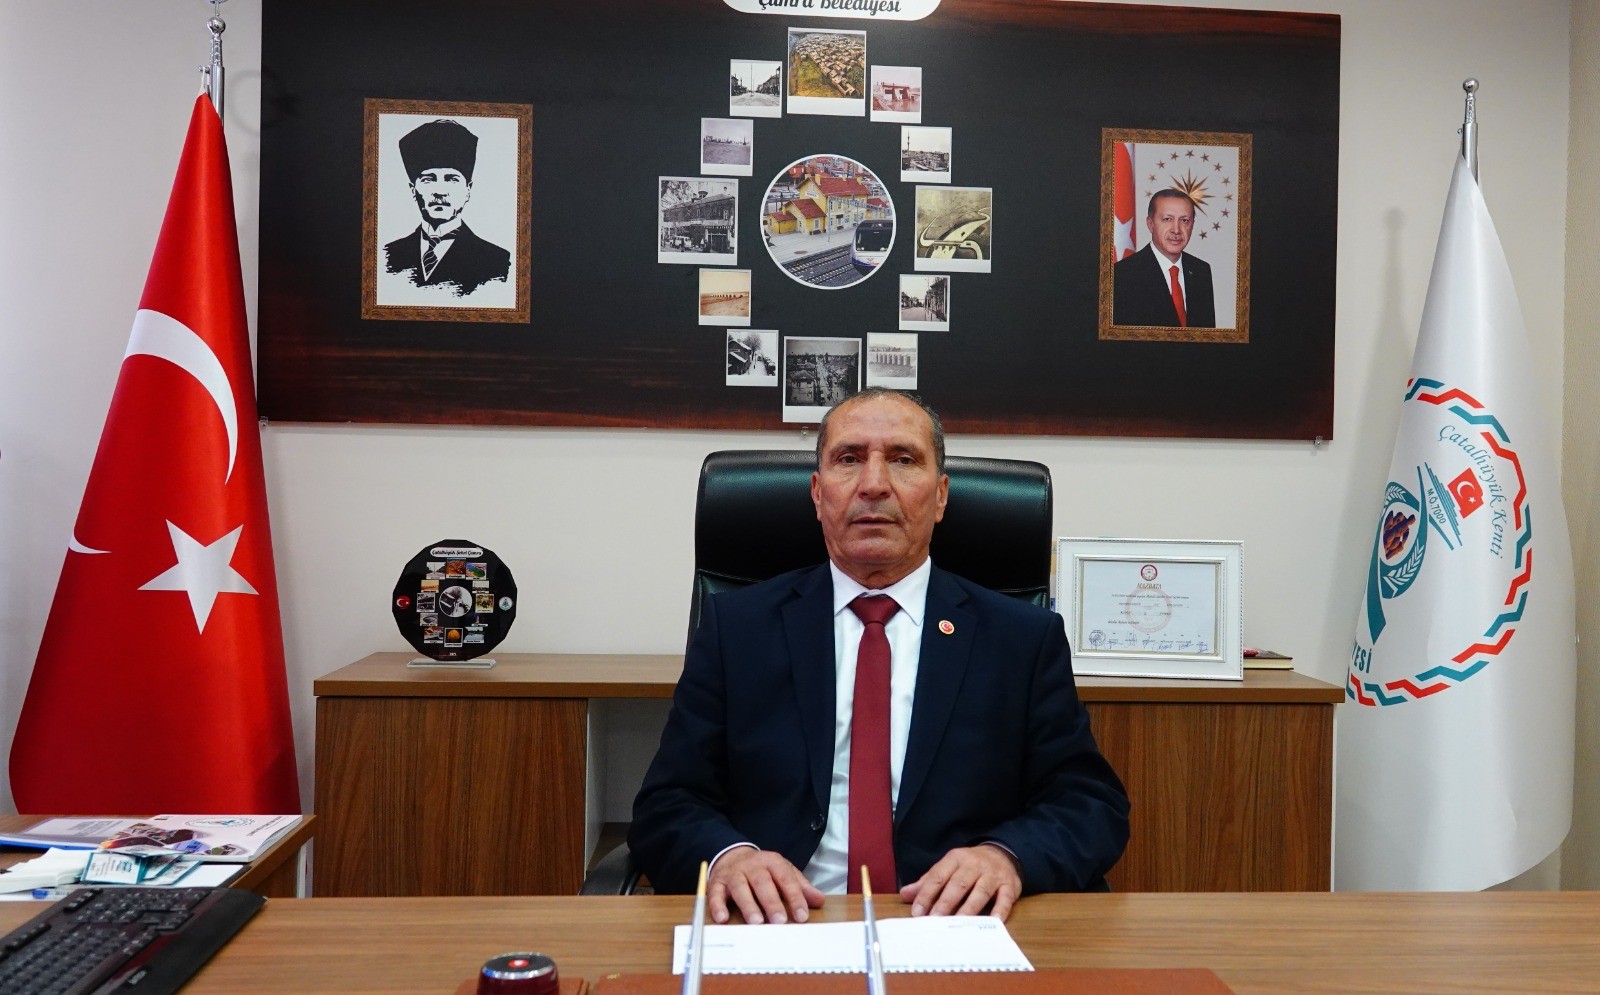 Çumra Belediye Başkanı Mehmet Aydın: 23 NİSAN İNANCIN VE GÜVENİN BİR GÖSTERGESİDİR